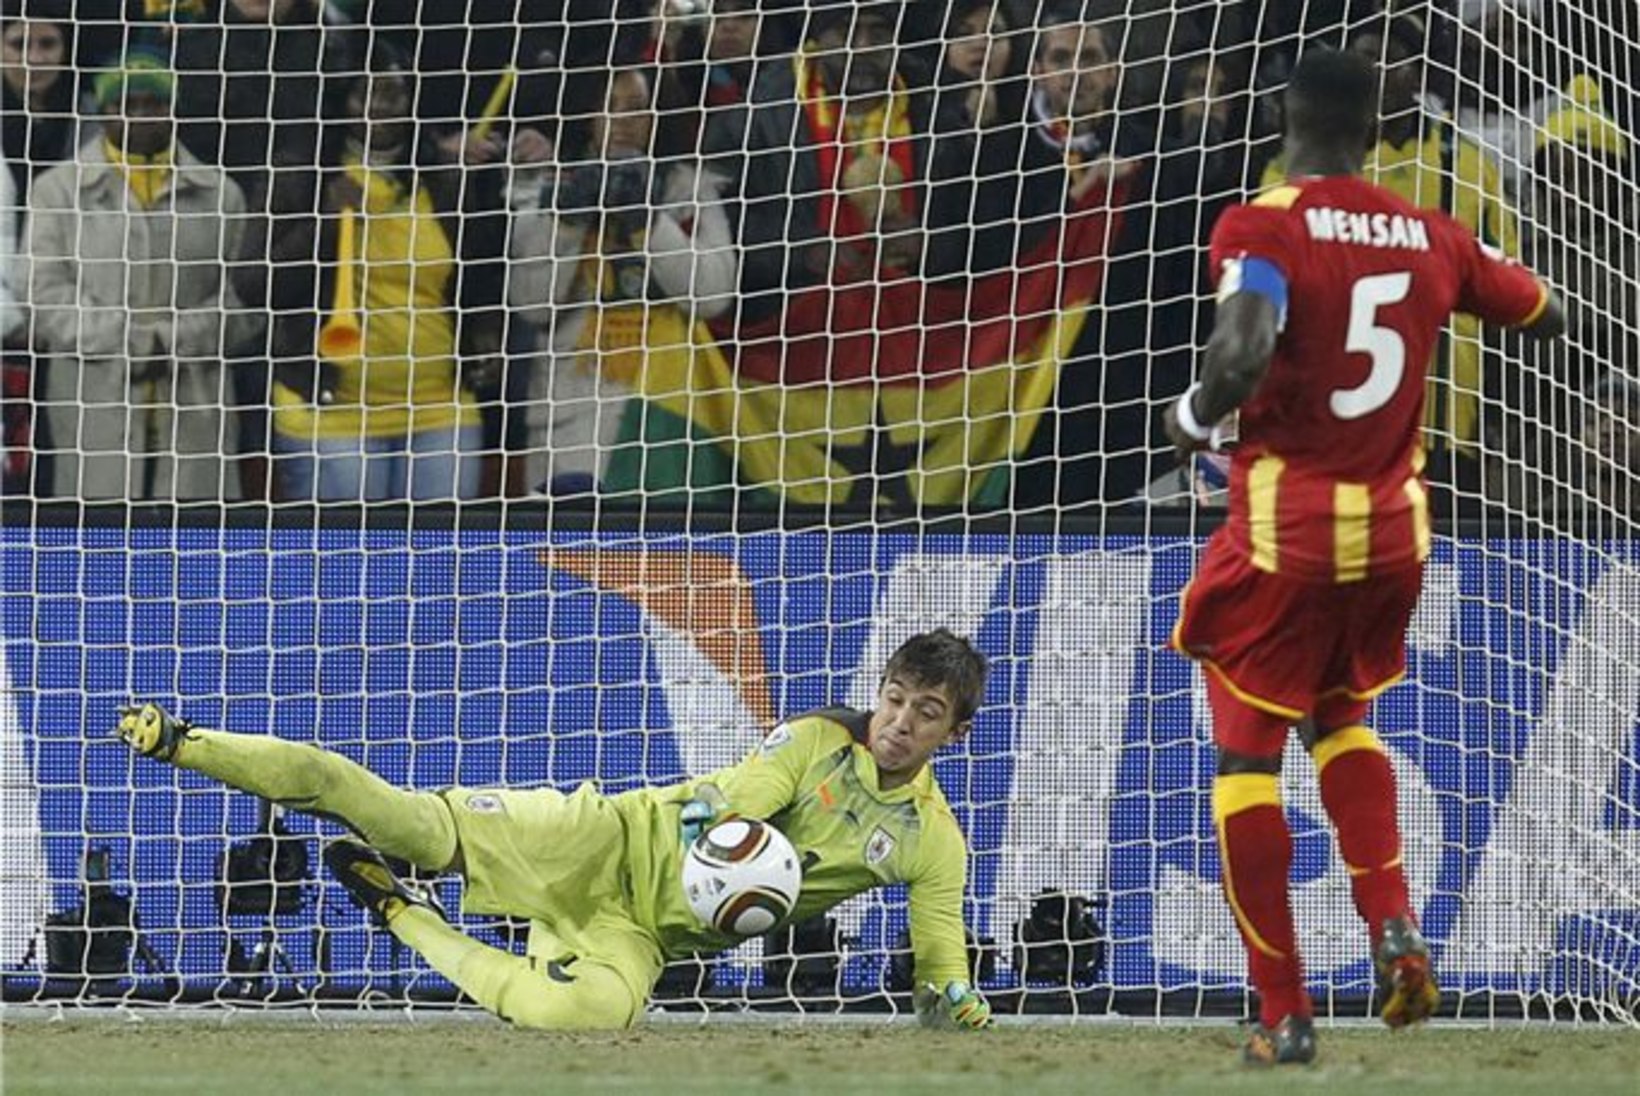 Milline draama! Suareze käsi aitas Uruguai penaltiseeria ja võiduni